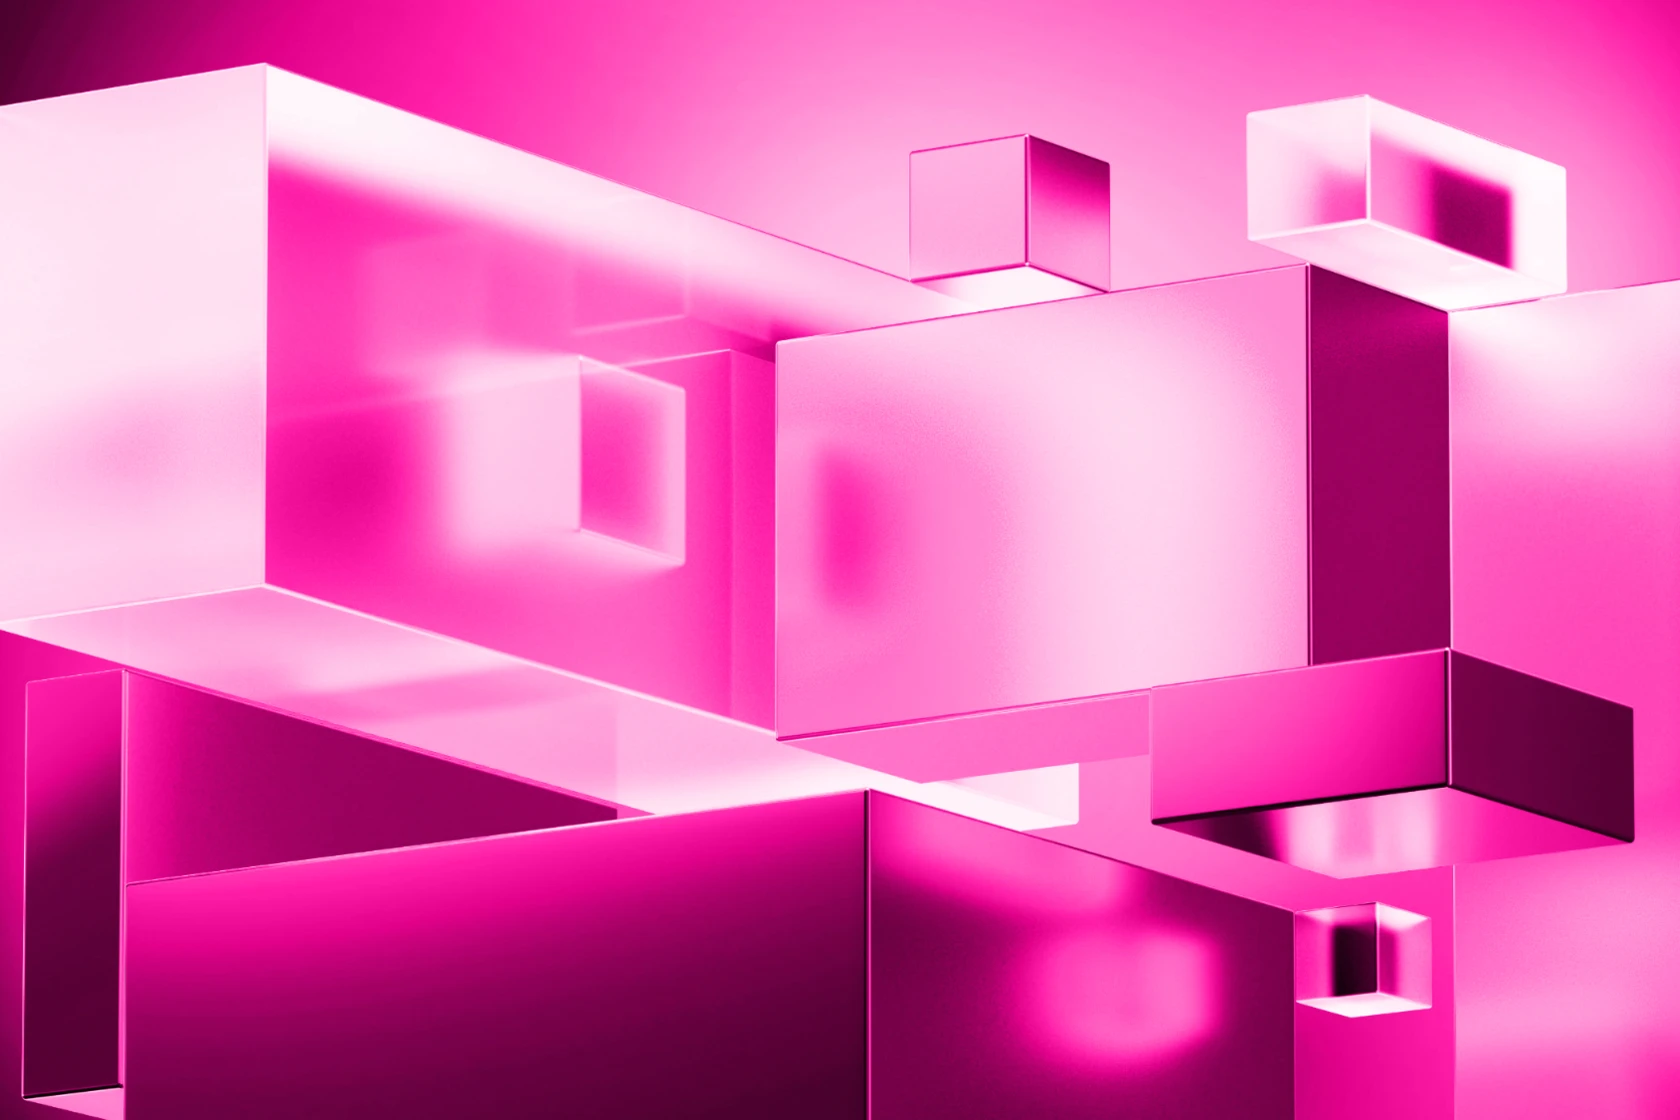 Kubistische Formen in Pinktönen